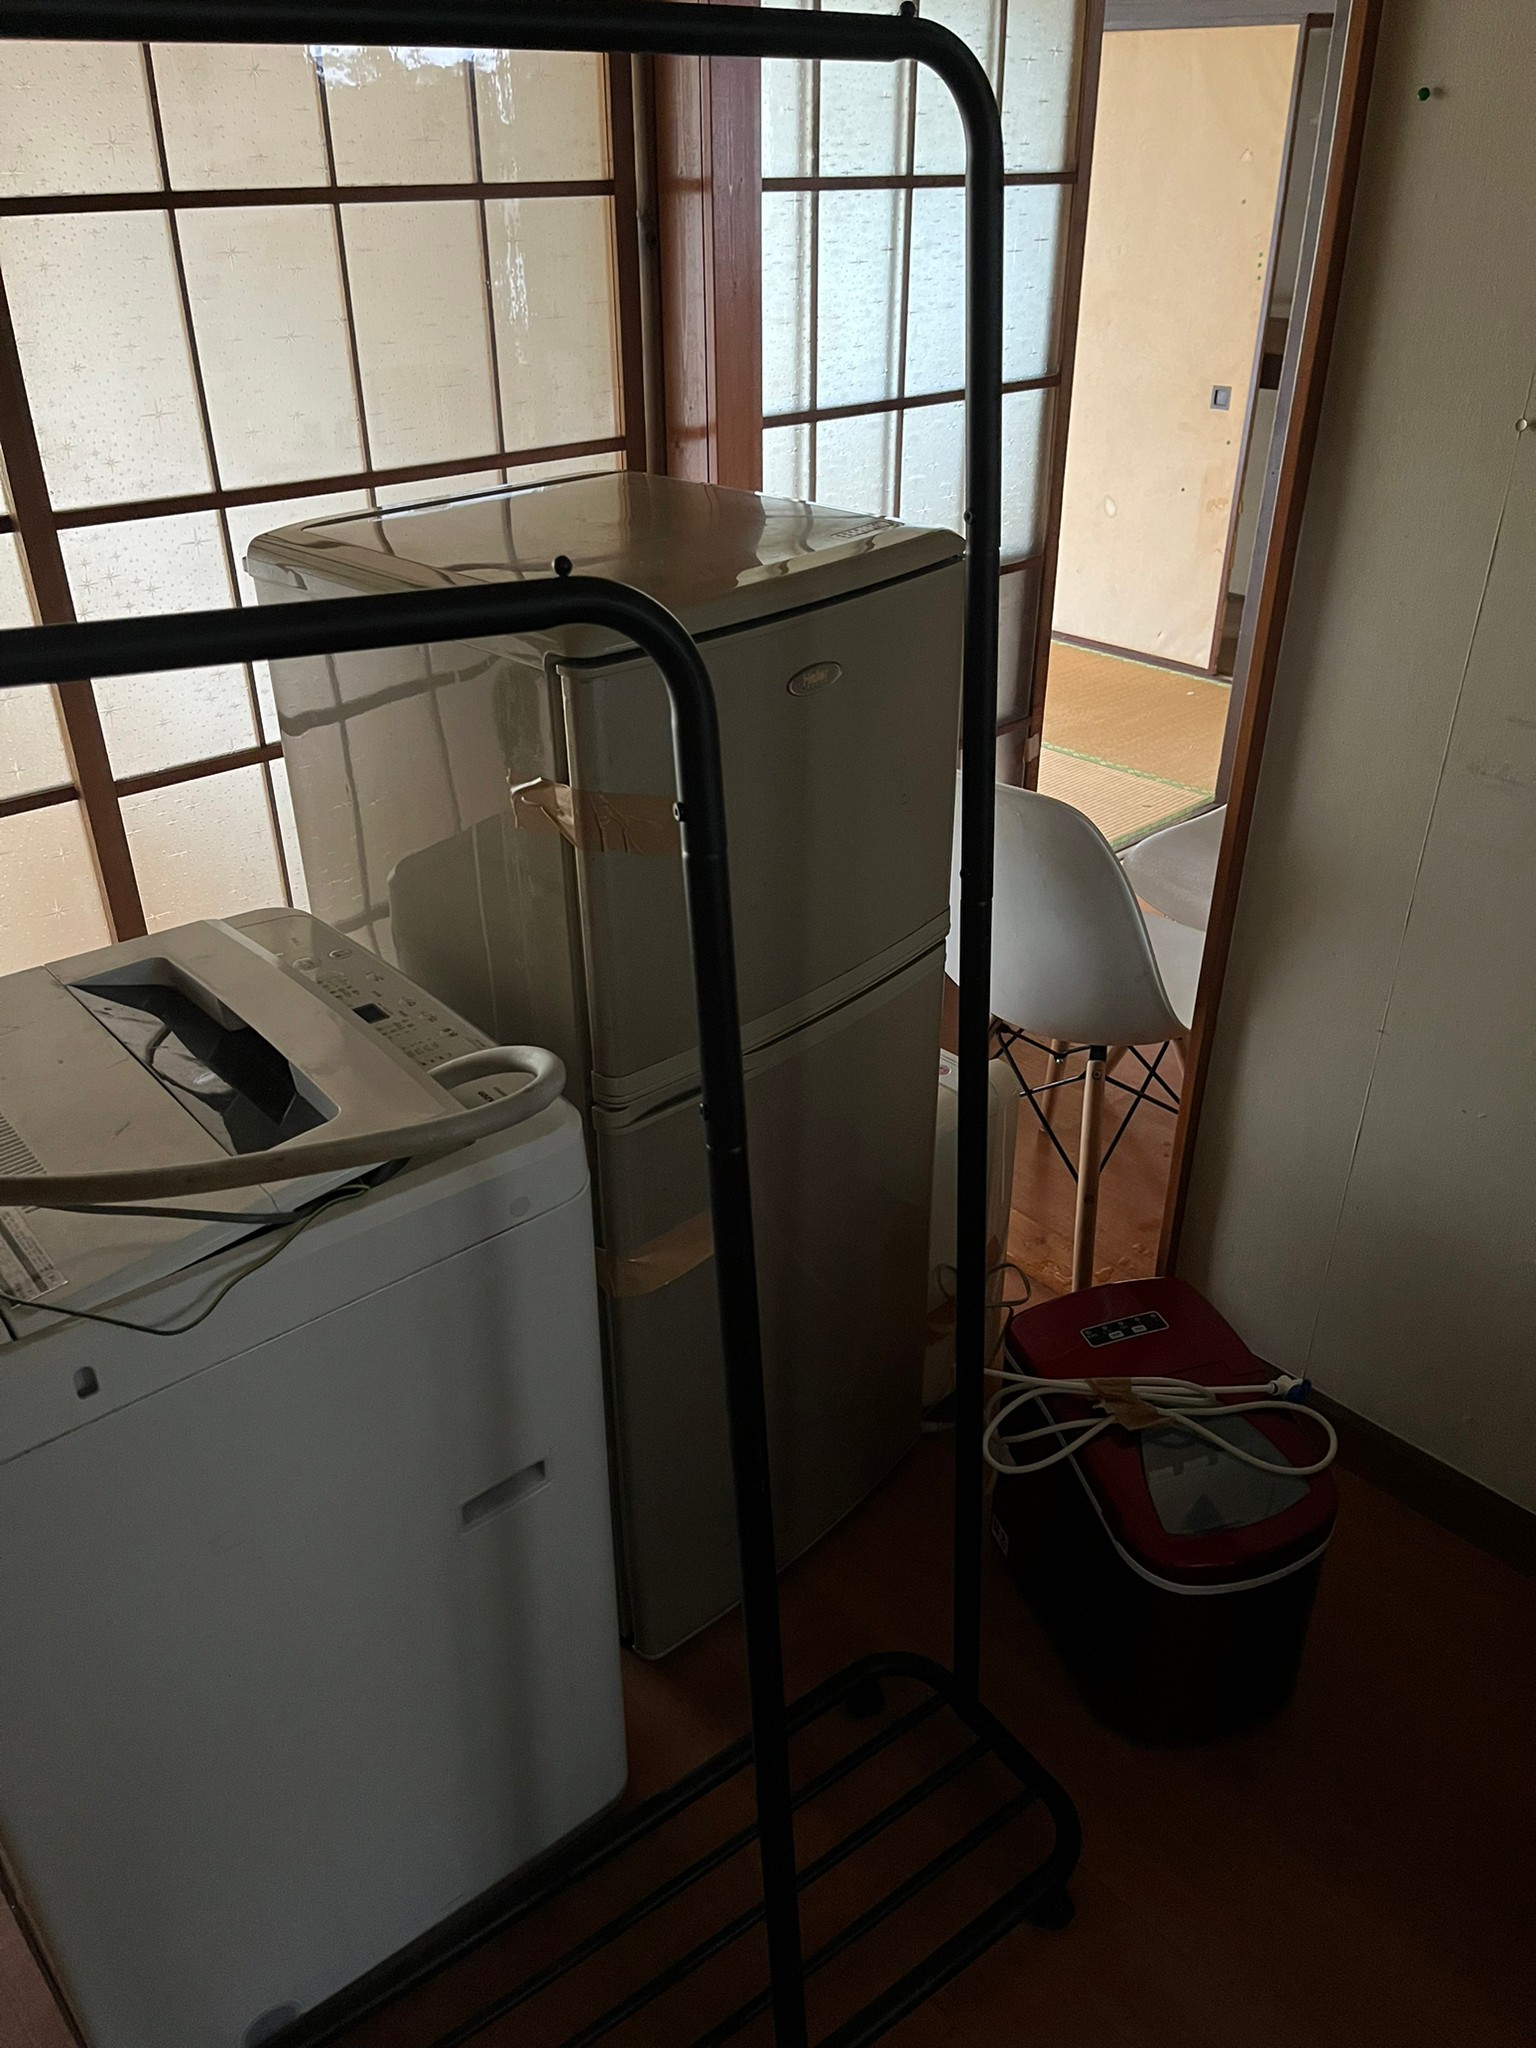 冷蔵庫、洗濯機、炊飯器、ハンガーラックの回収前の状態